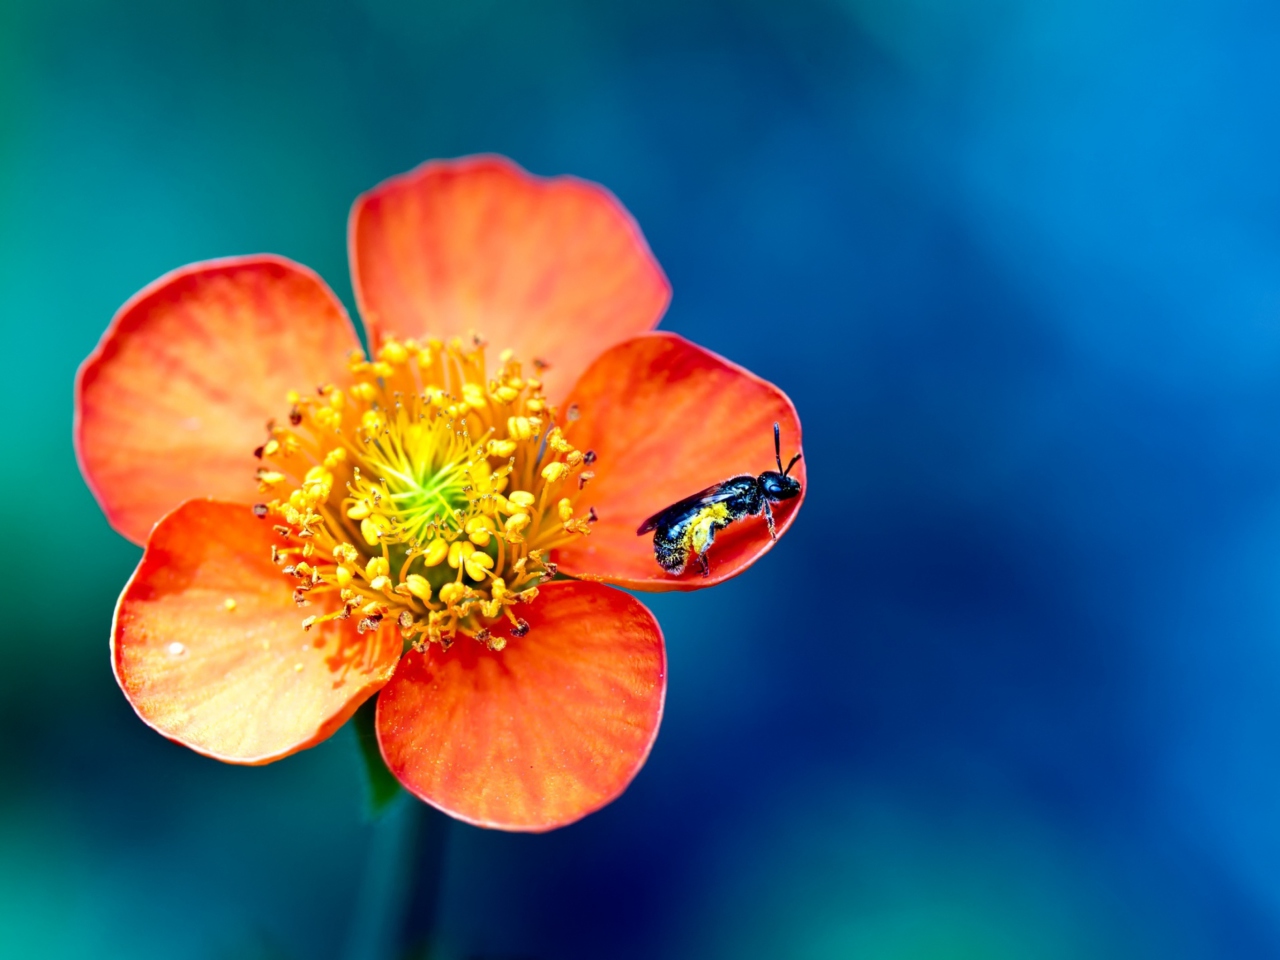 Обои Bee On Orange Flower 1280x960